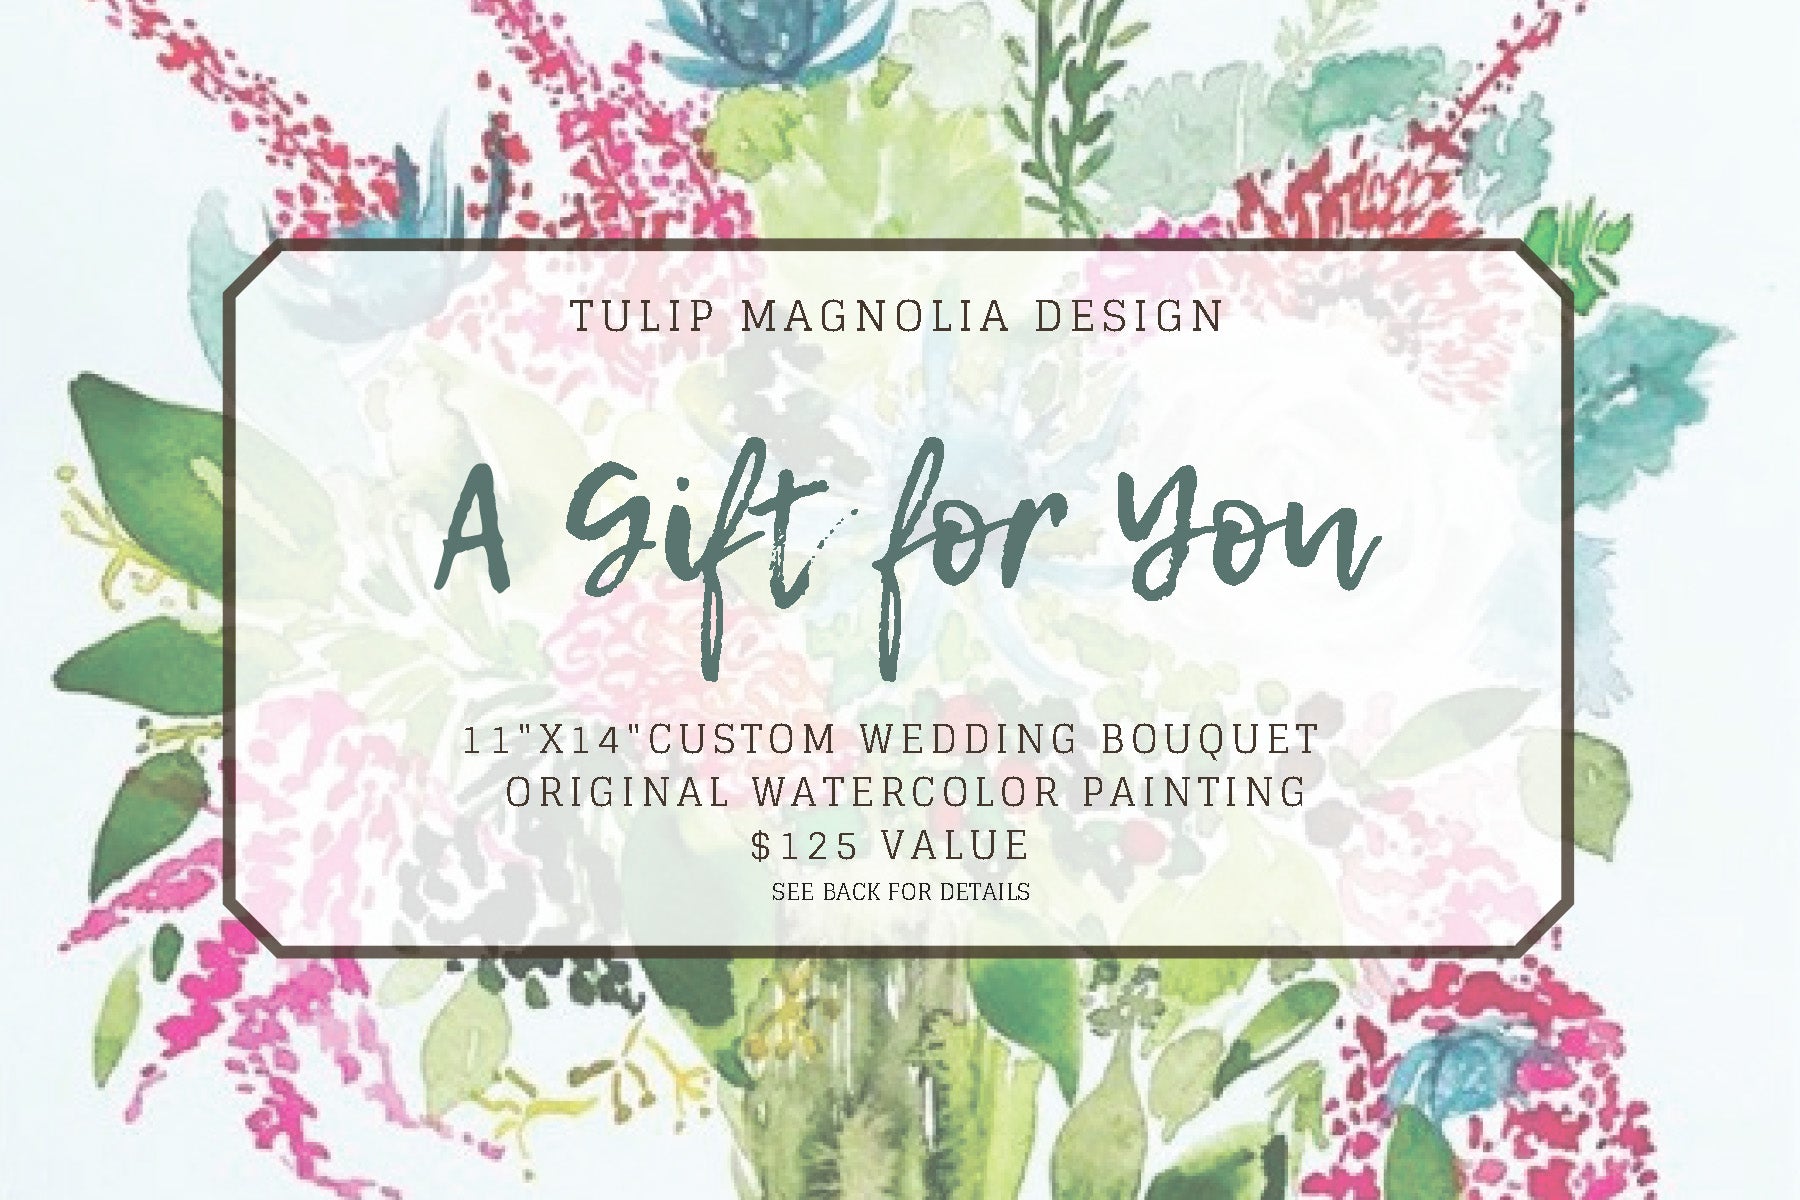 custom-wedding-bouquet-gift-certificate-tulip-magnolia-design